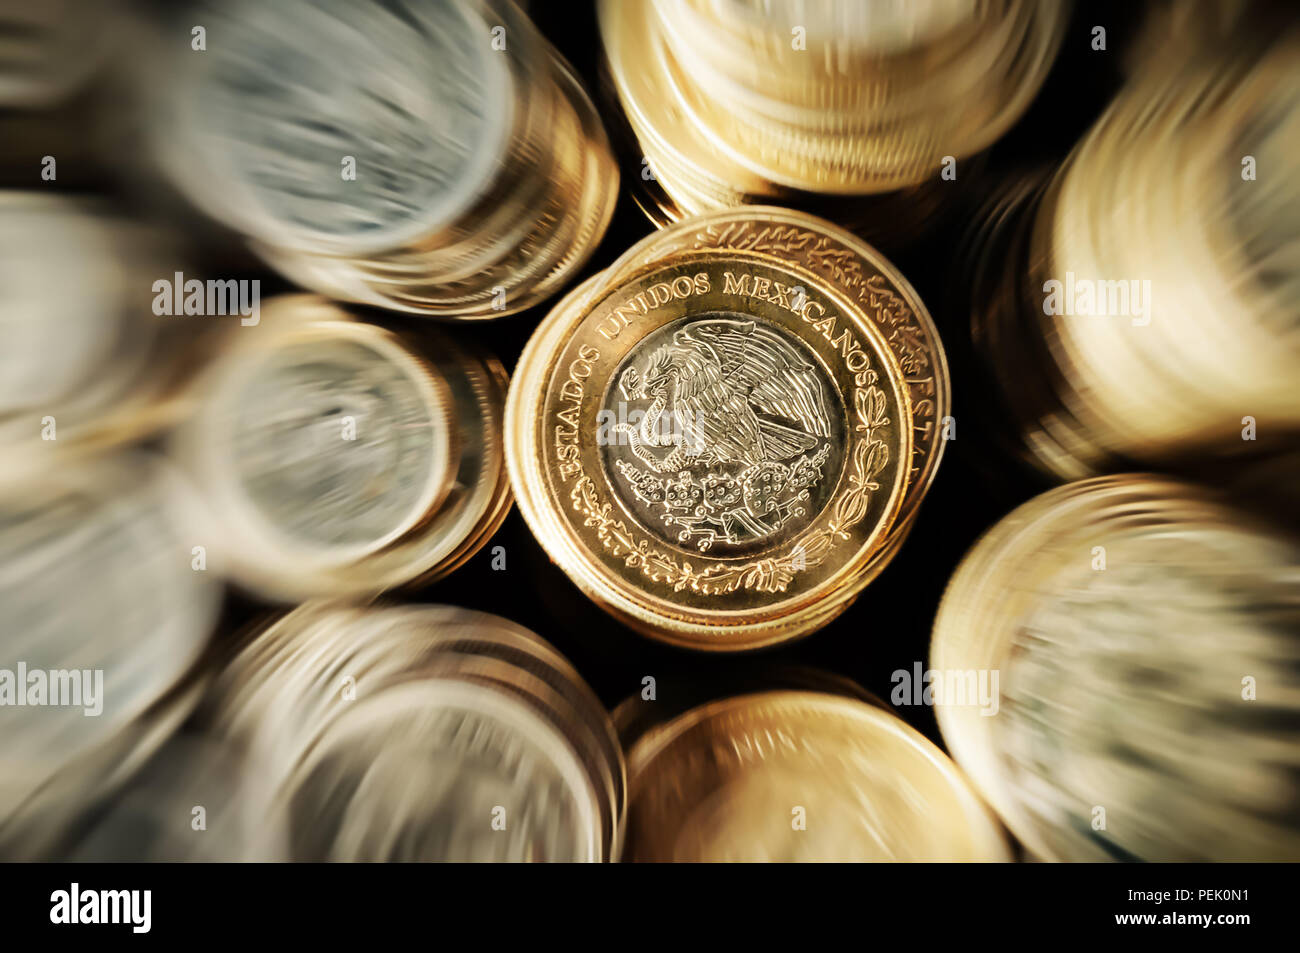 Effectuez un zoom avant pour monnaie peso mexicain empilés sur le côté face de l'aigle Banque D'Images